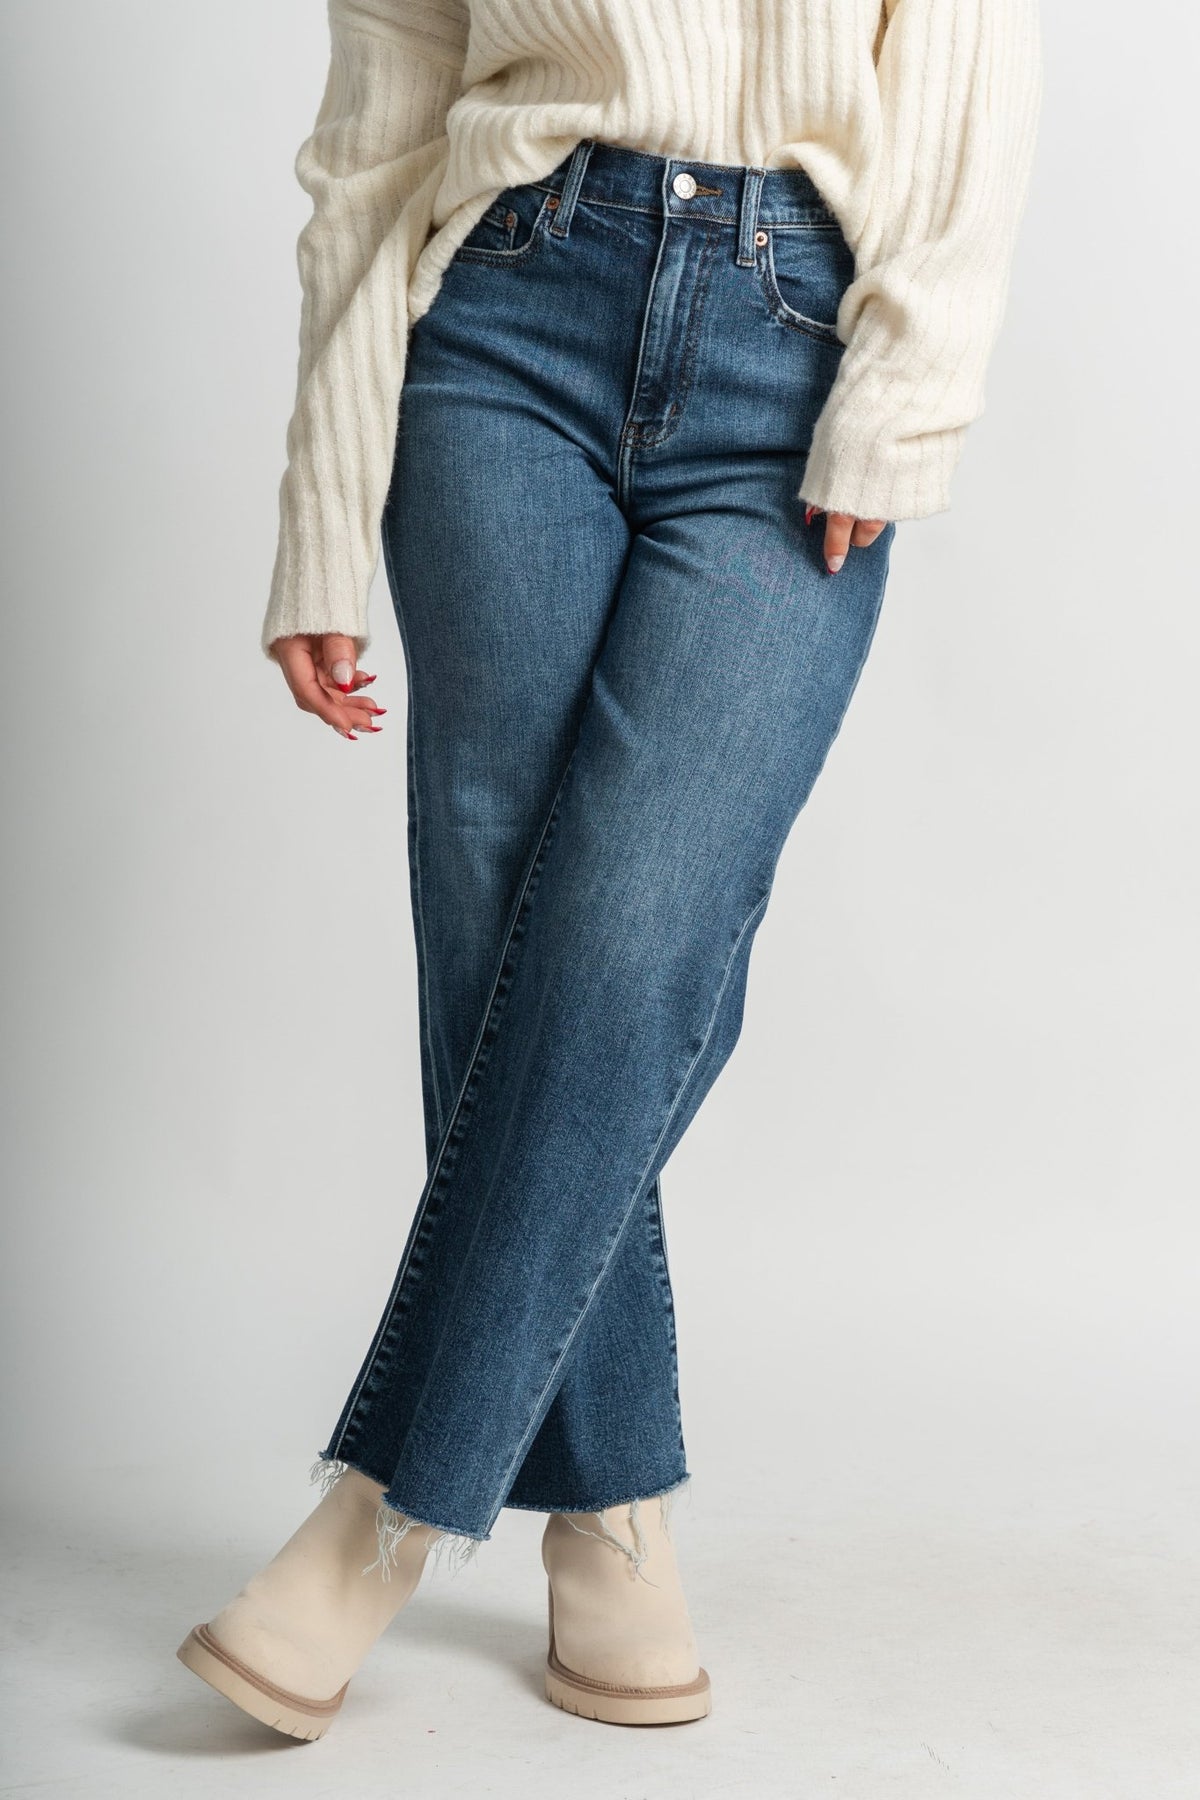 Daze pleaser high rise wide leg ankle jeans double text | Lush Fashion Lounge: boutique women's jeans, fashion jeans for women, affordable fashion jeans, cute boutique jeans